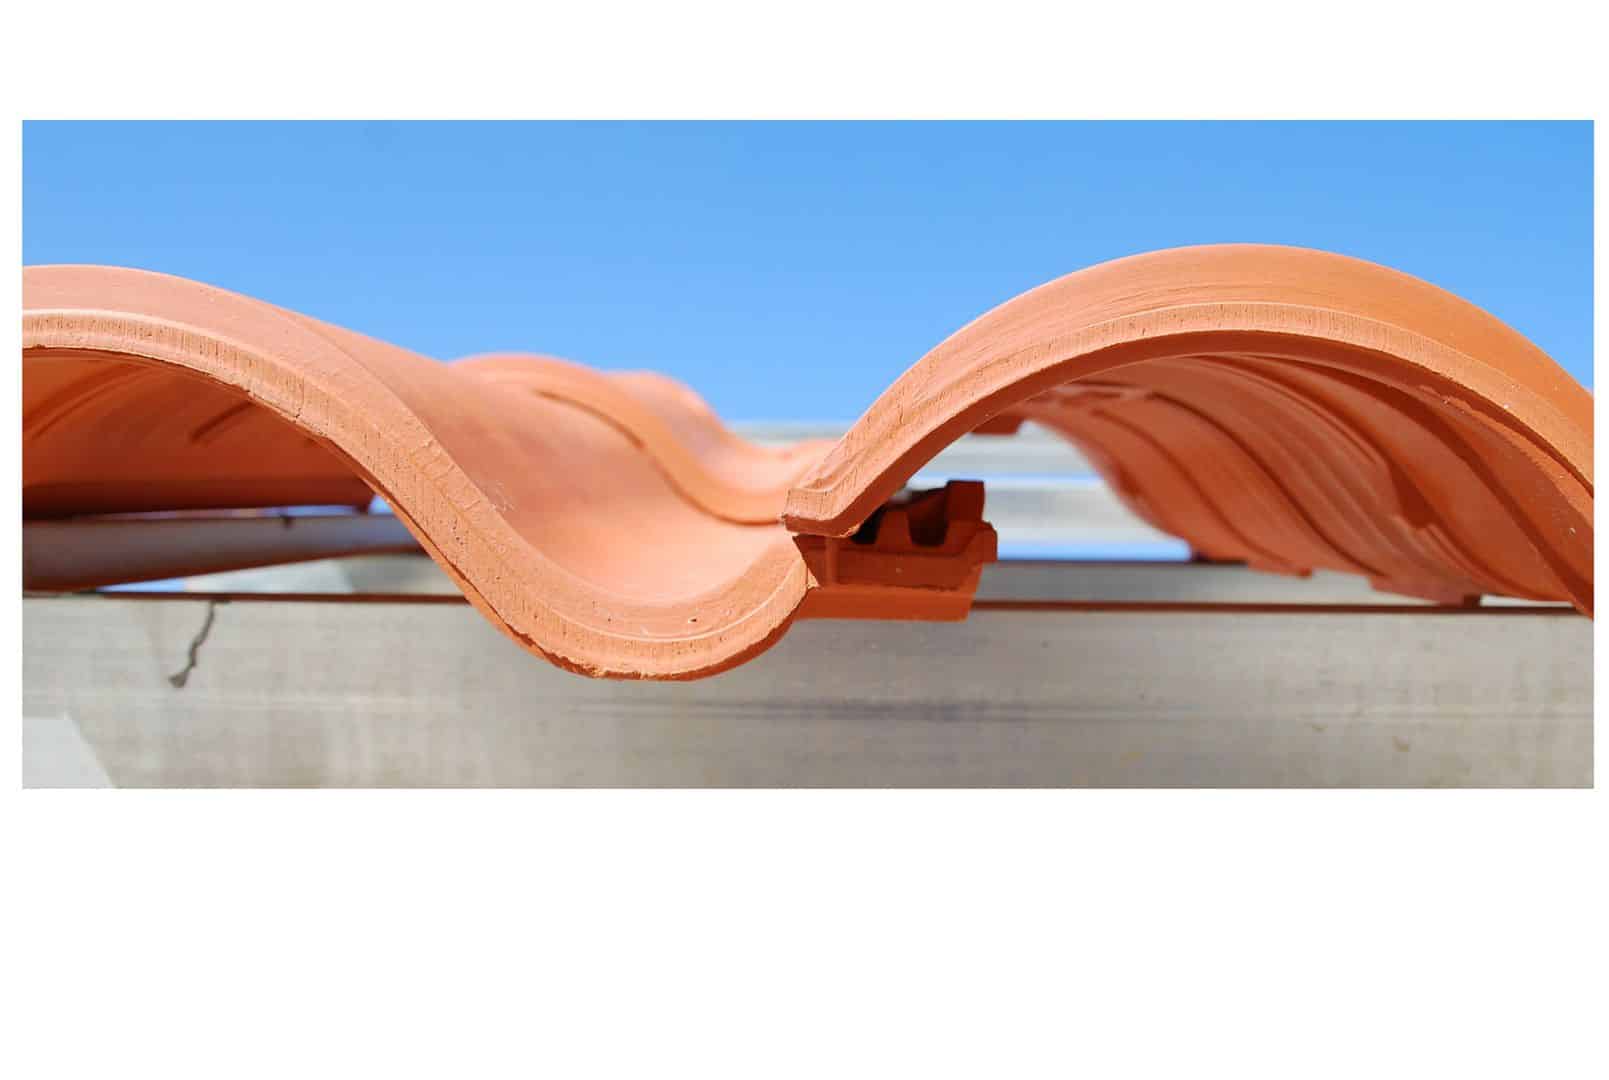 Diseño y altas prestaciones se unen en Klinker Hydra, la teja de cerámica mixta de Cobert